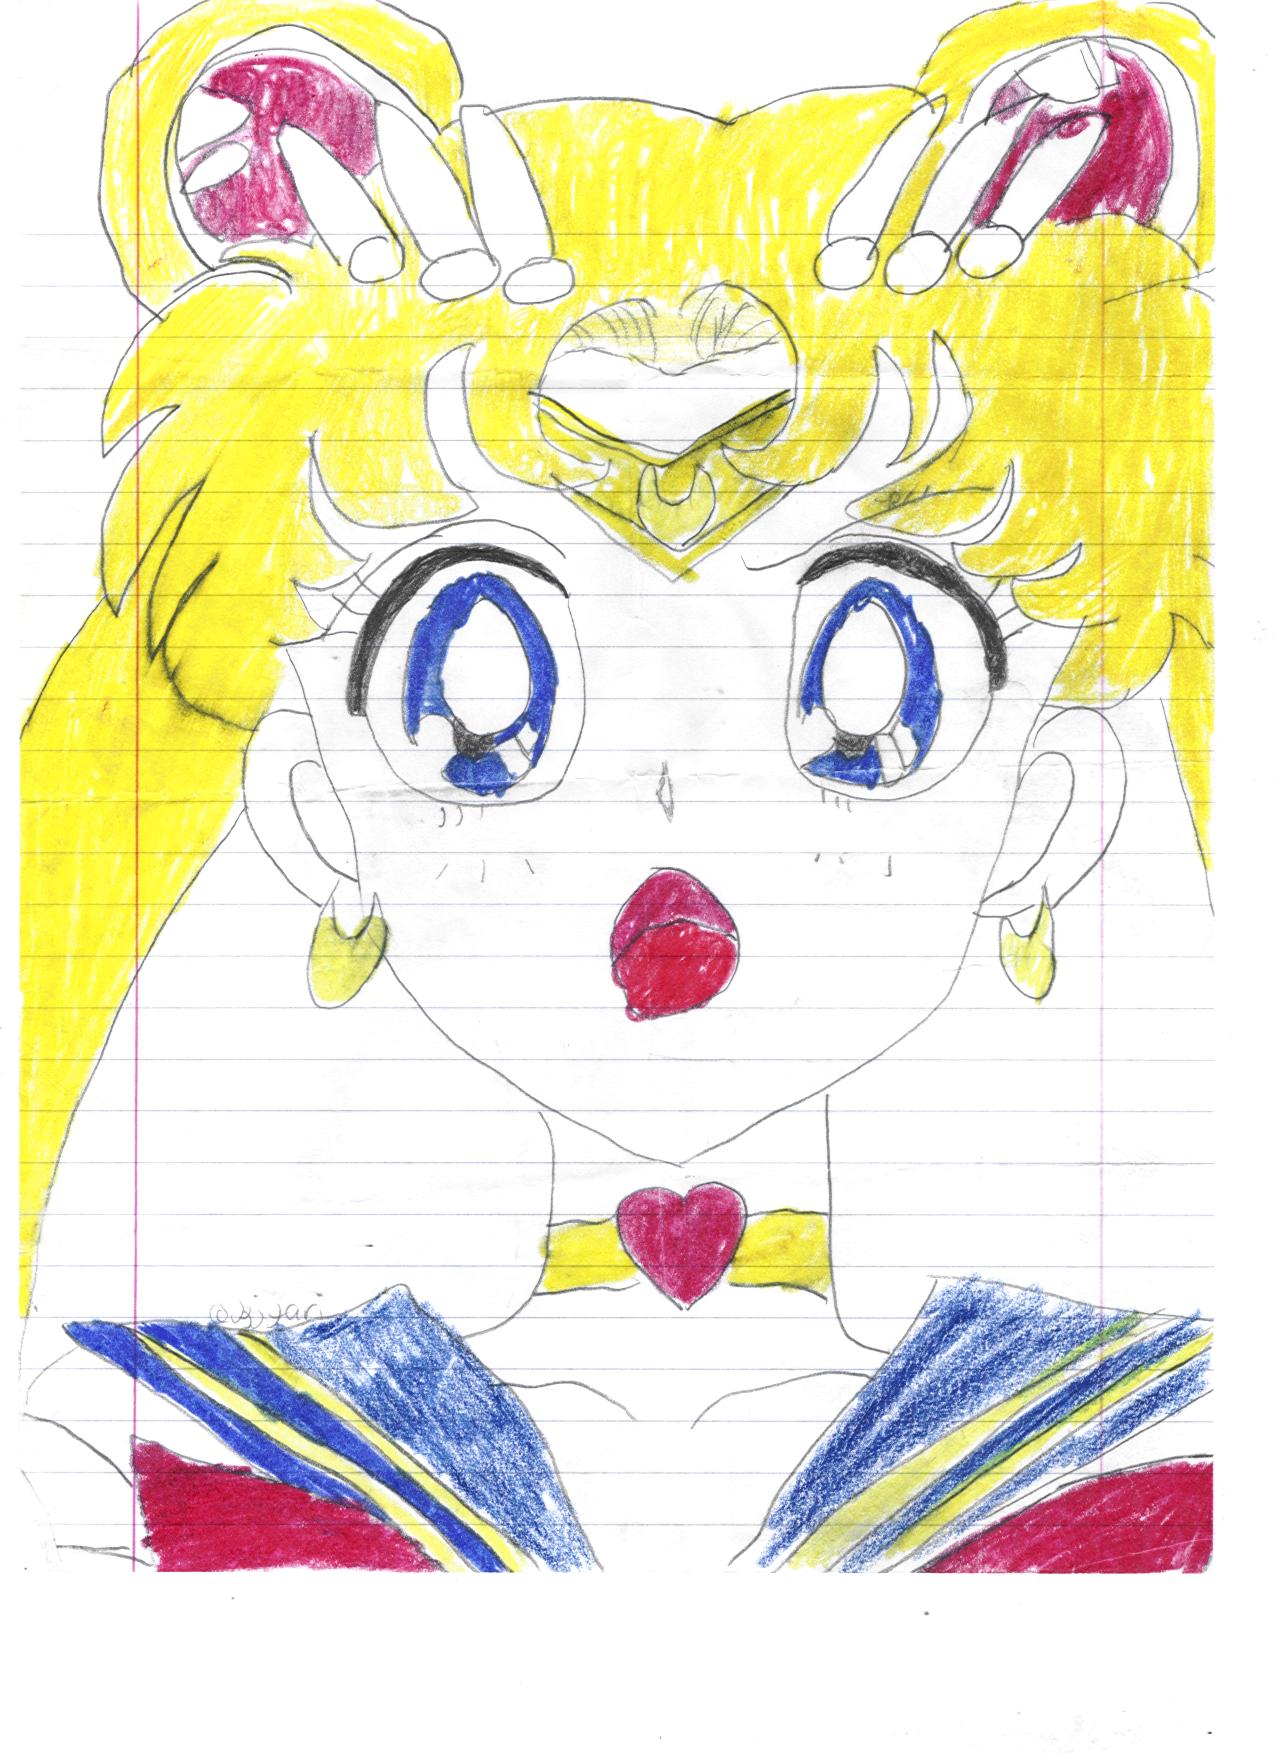 Sailor moon again by HieisAngel